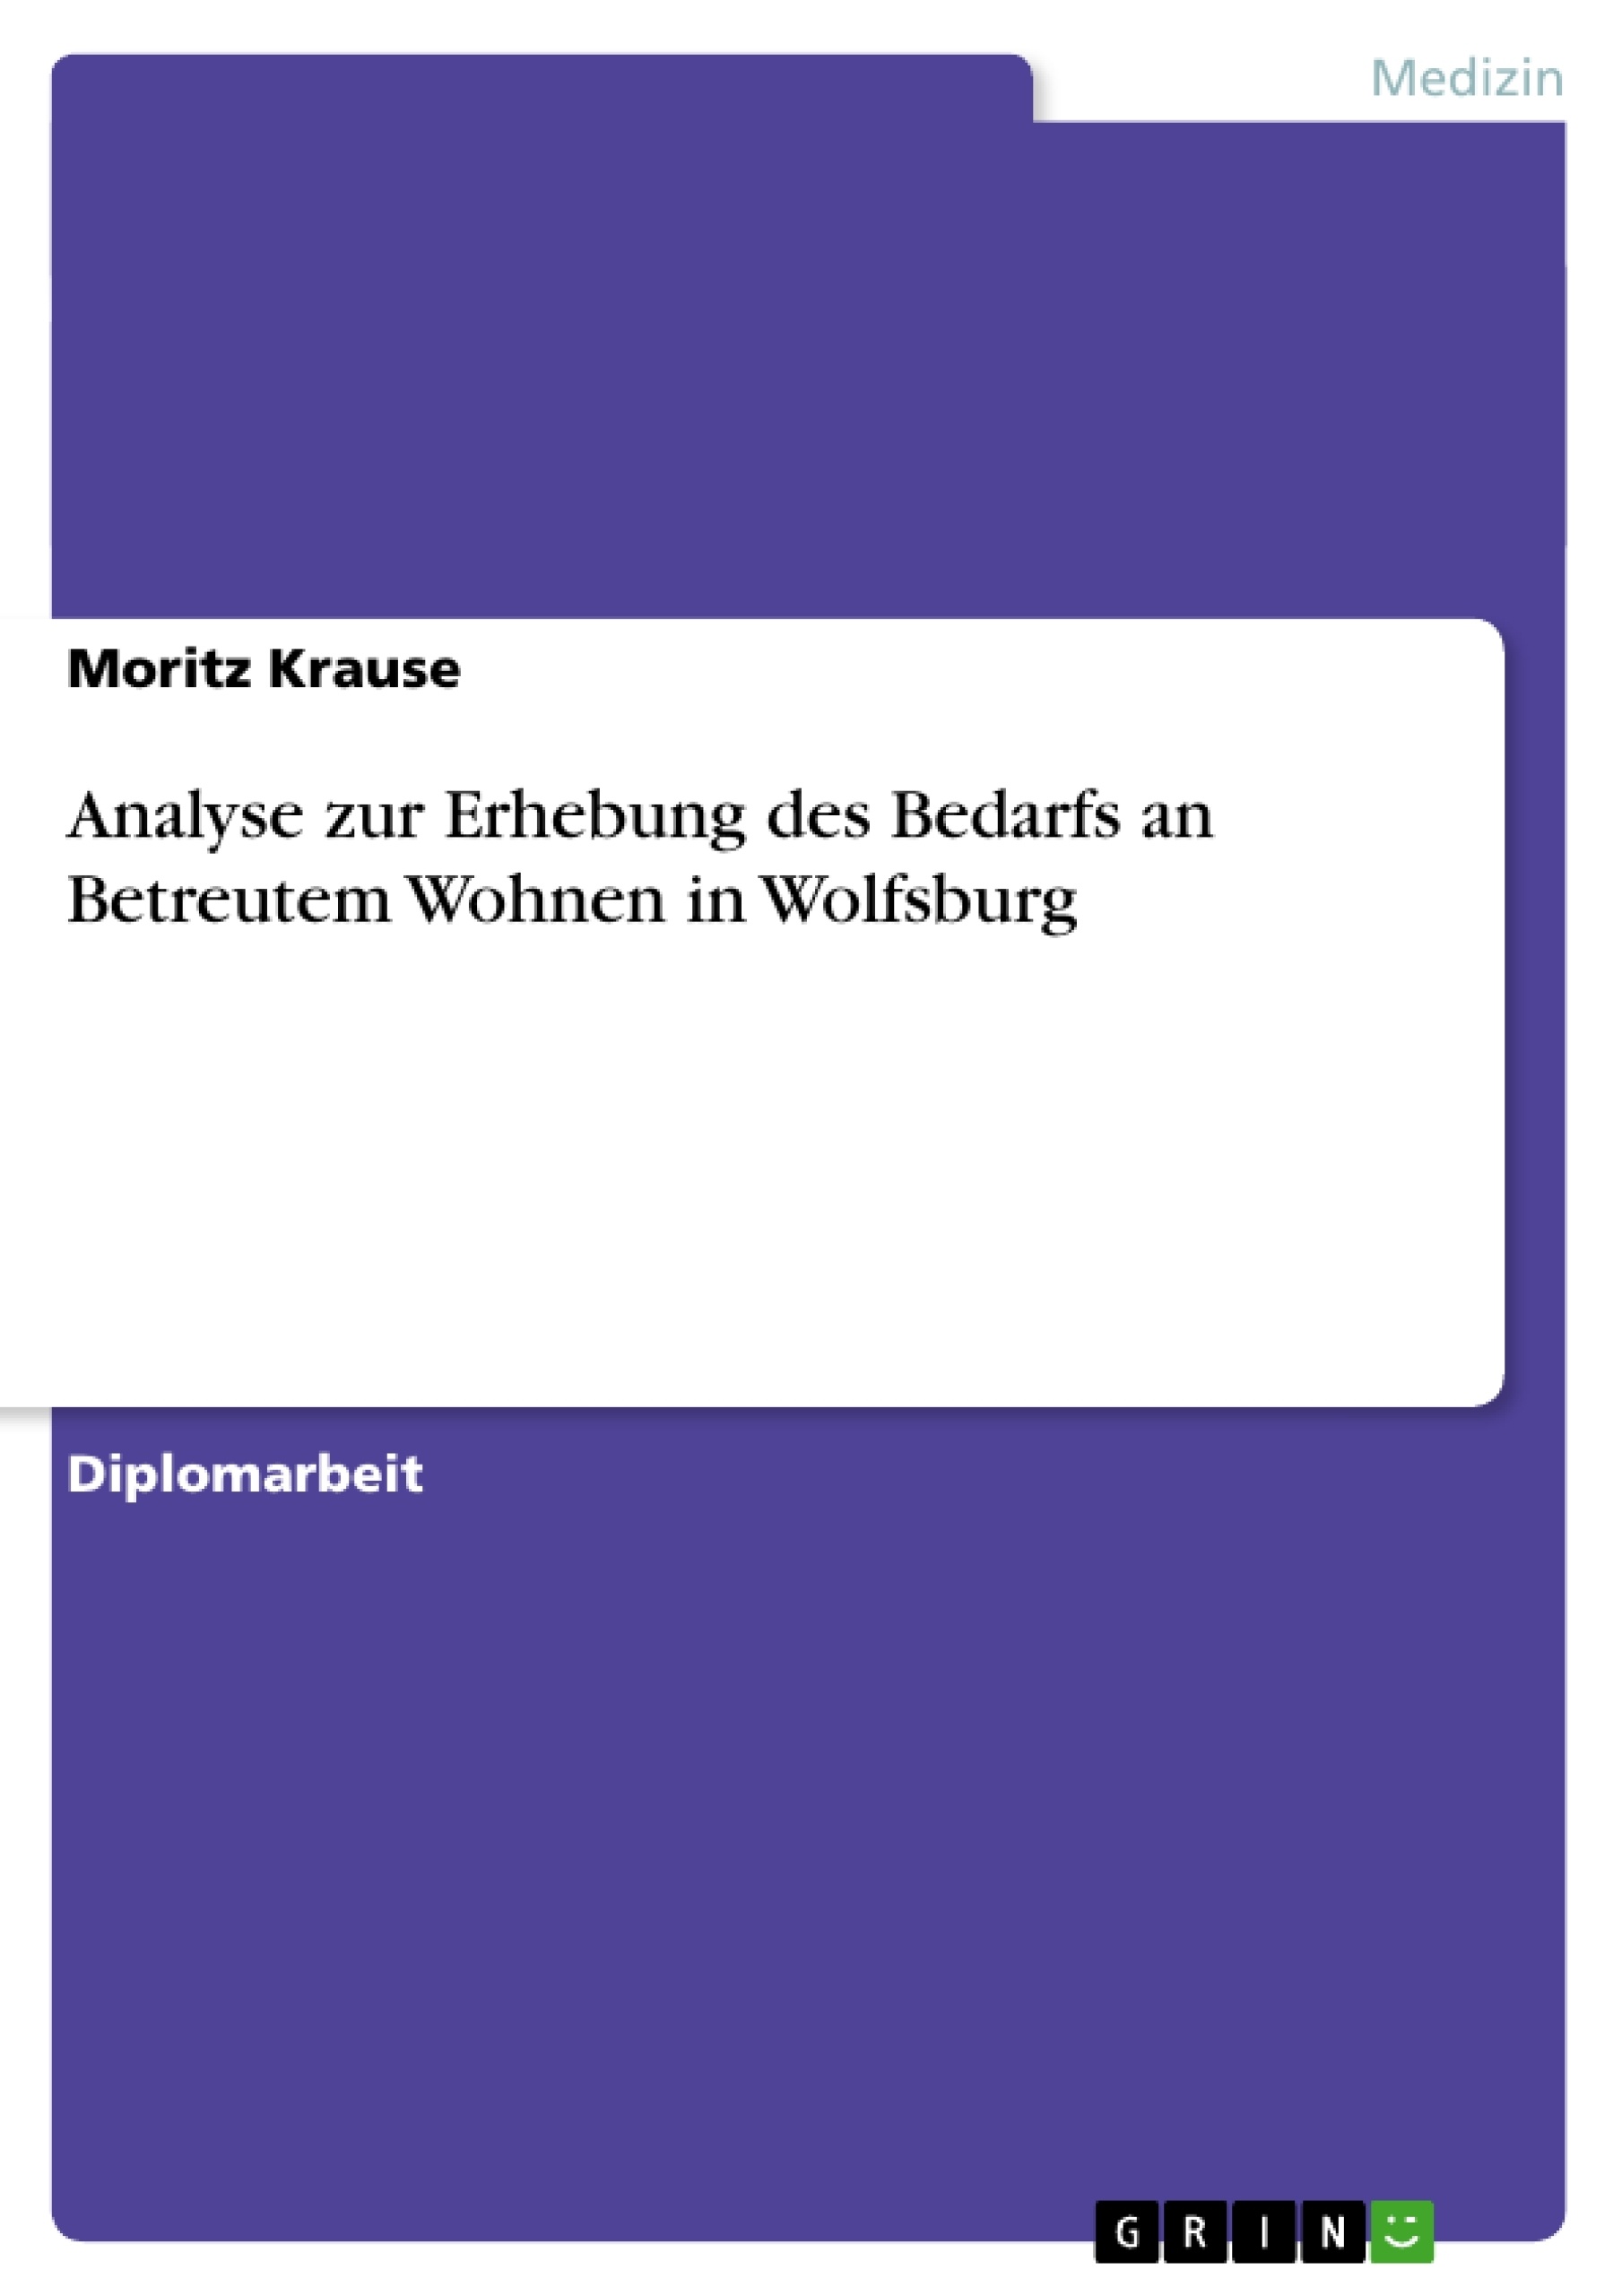 Title: Analyse zur Erhebung des Bedarfs an Betreutem Wohnen in Wolfsburg